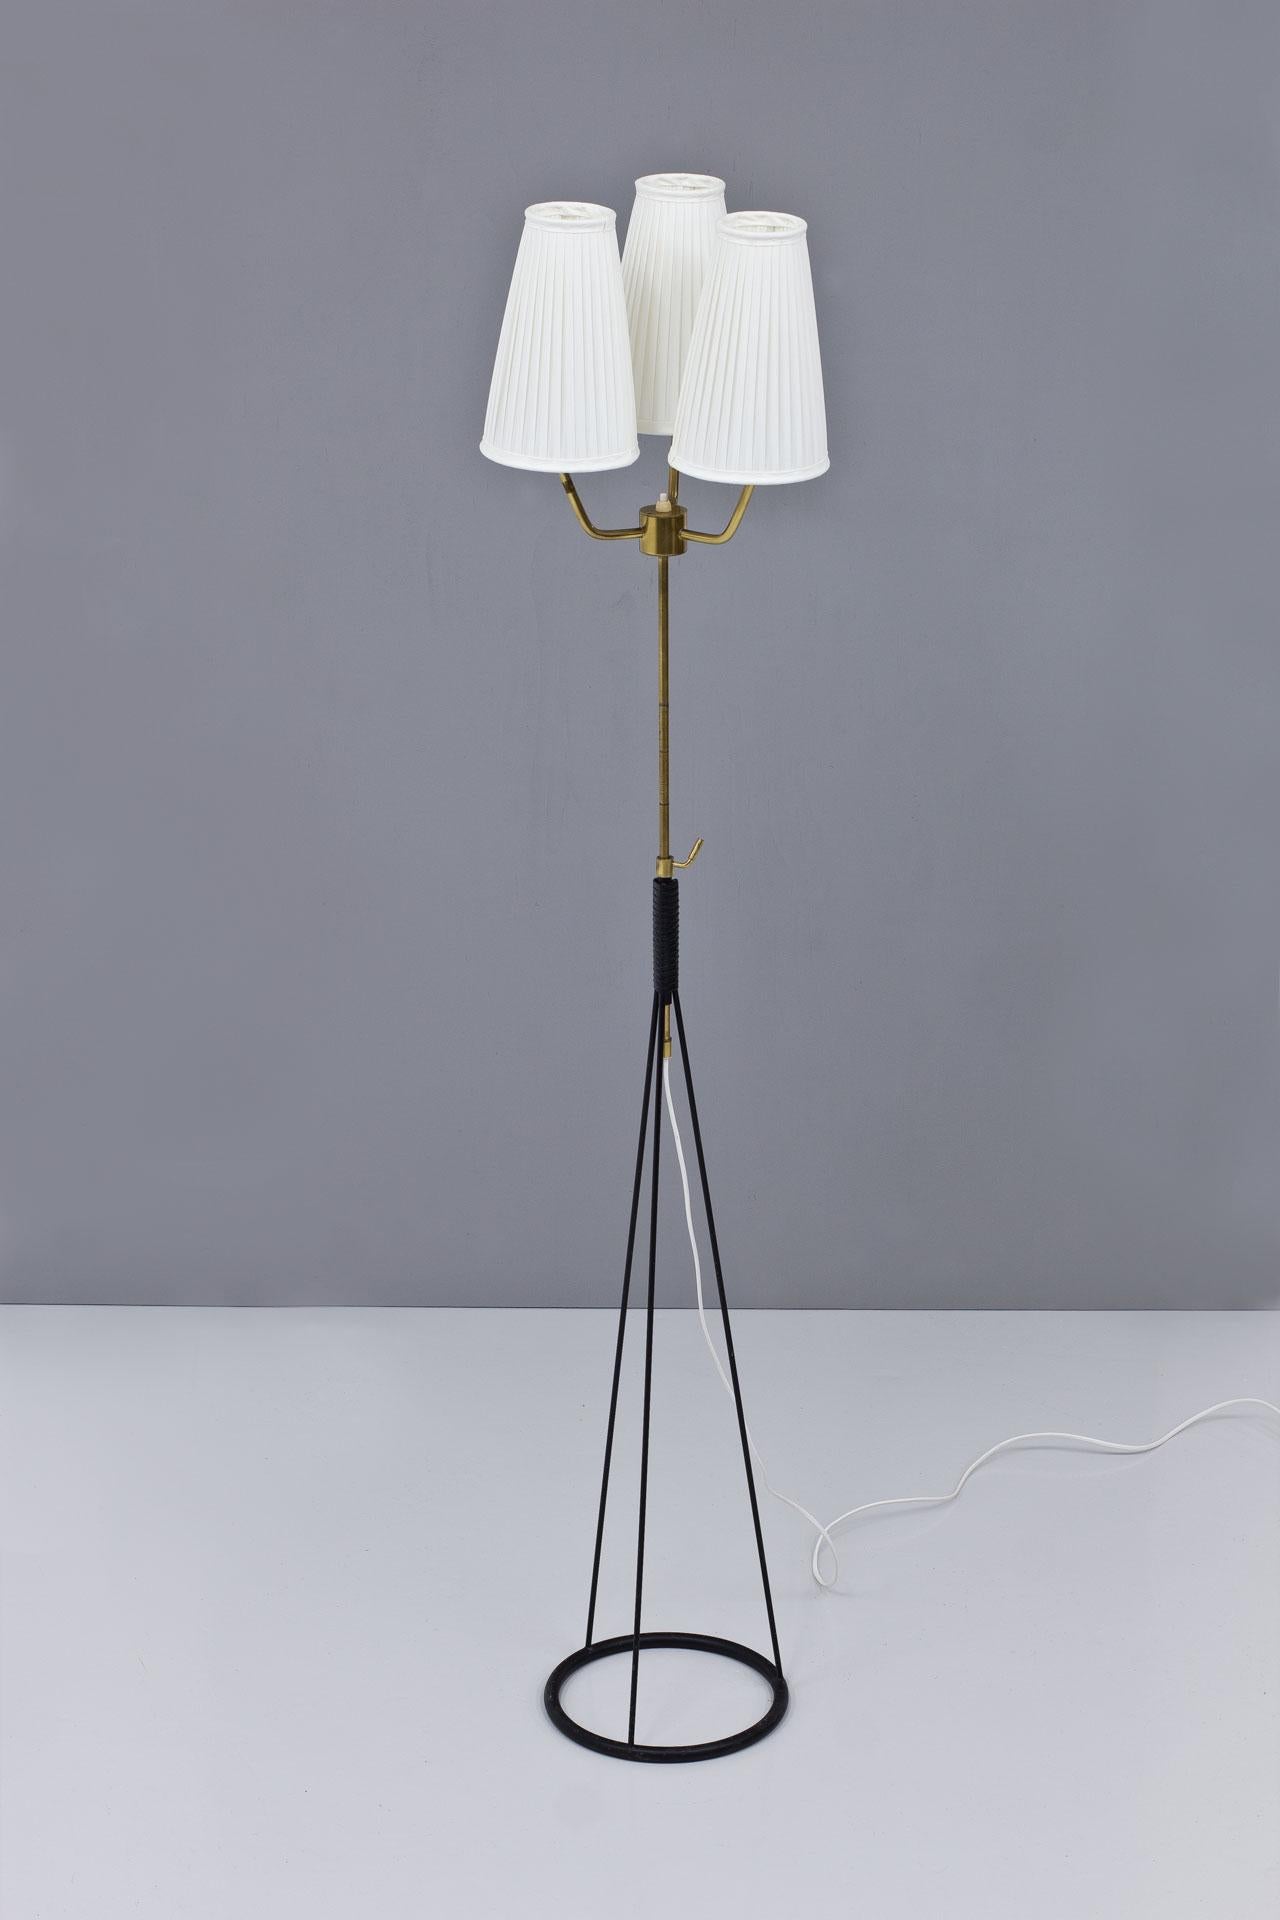 Rare lampadaire conçu par Eje Ahlgren, fabriqué par AB Luco à Göteborg, Suède, dans les années 1950.
Métal laqué noir avec tige en laiton. Les abat-jour d'origine ont été recouverts d'un tissu plissé en chintz blanc cassé. La potence est réglable en